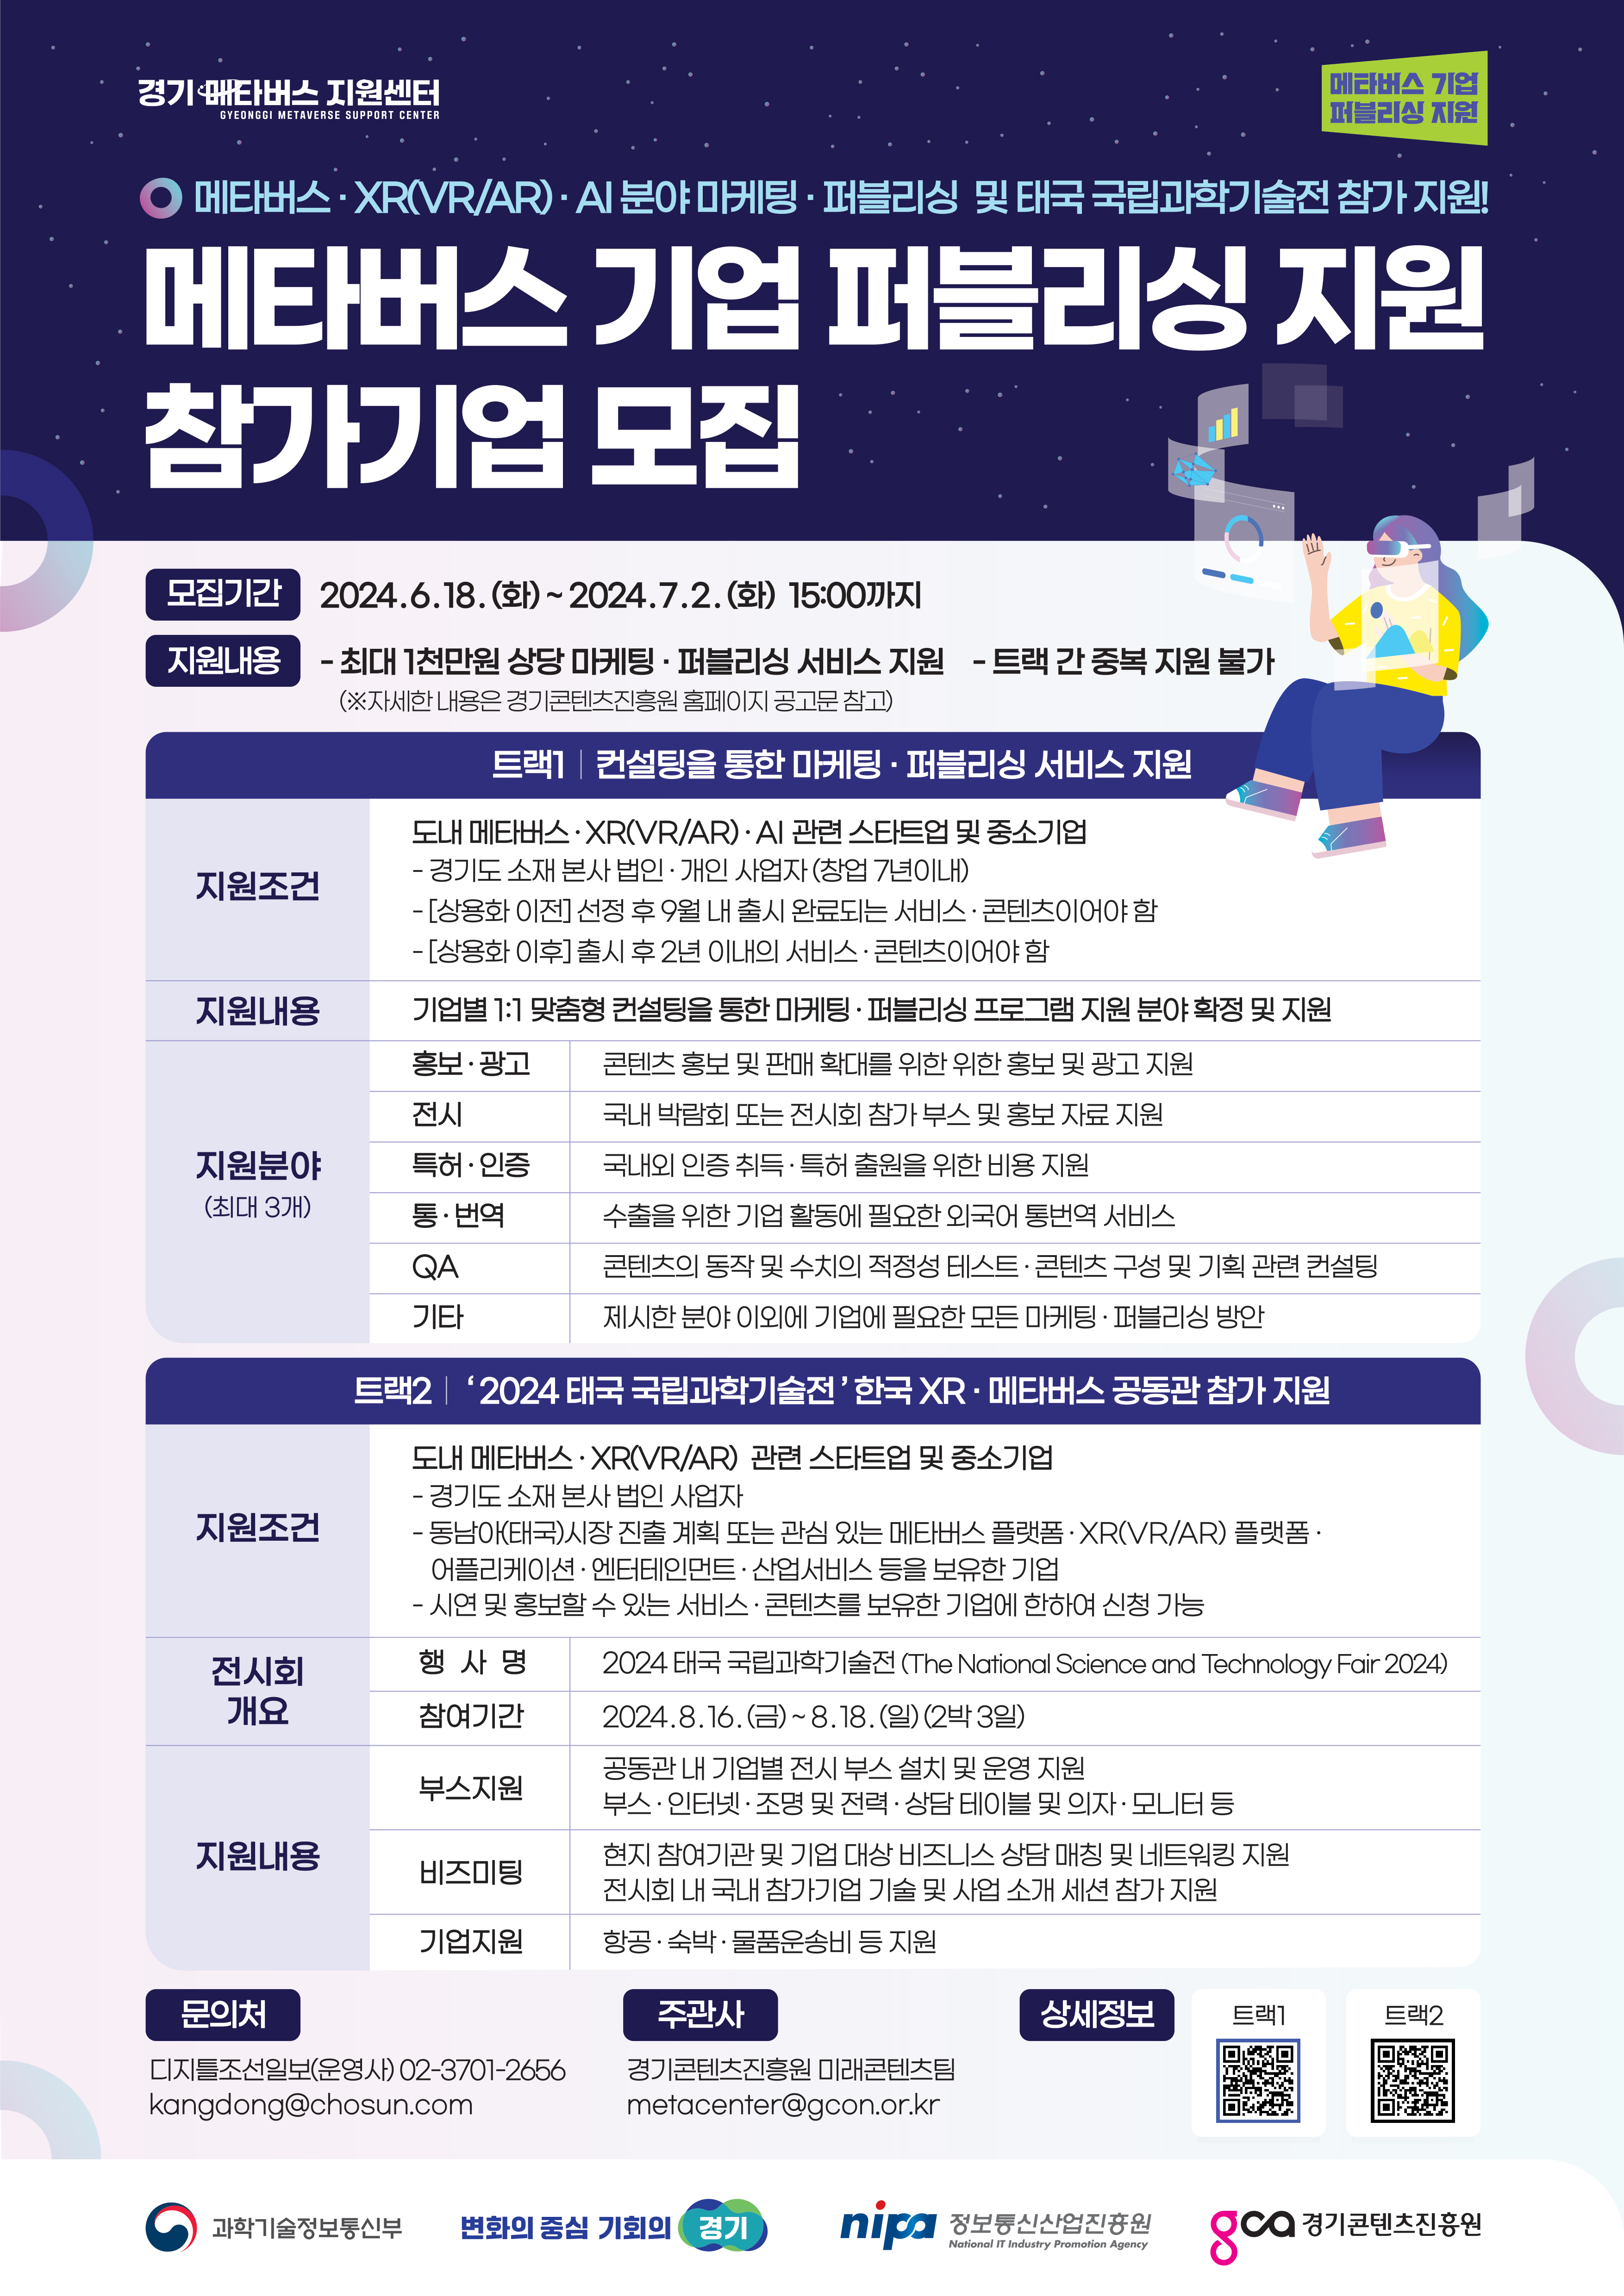 경기도, ‘메타버스 기업 퍼블리싱 지원 사업’ 참여기업 모집